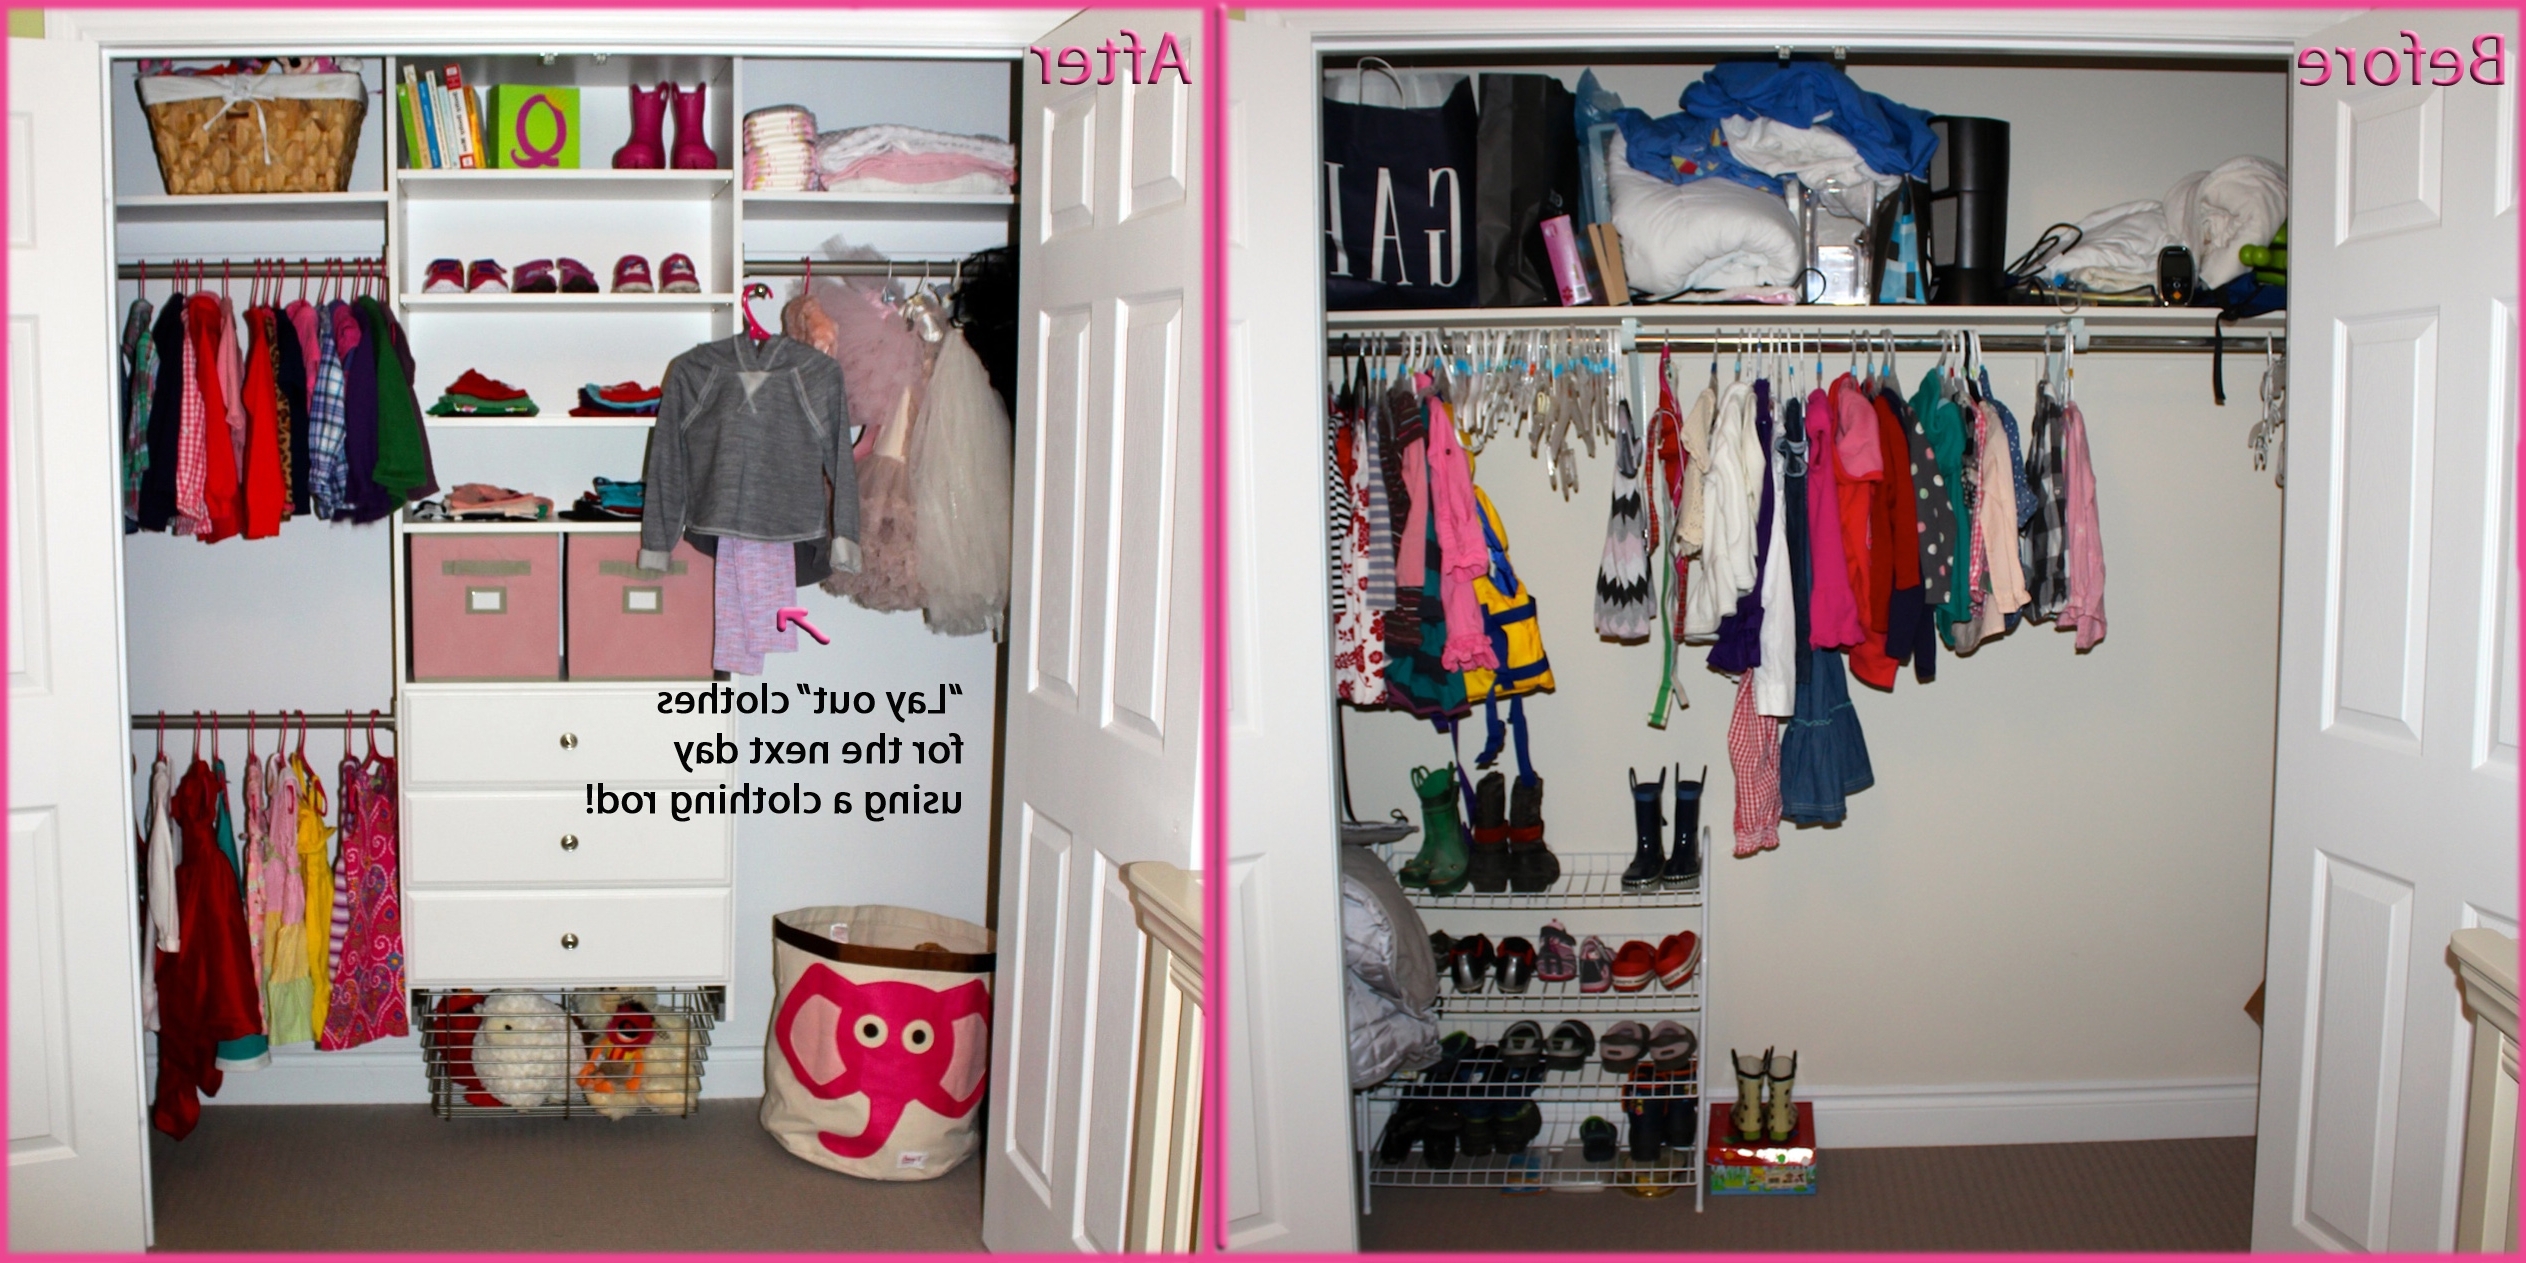 atraente organização do armário em qualquer orçamento foto é seção de Martha Stewart Closet Organization 